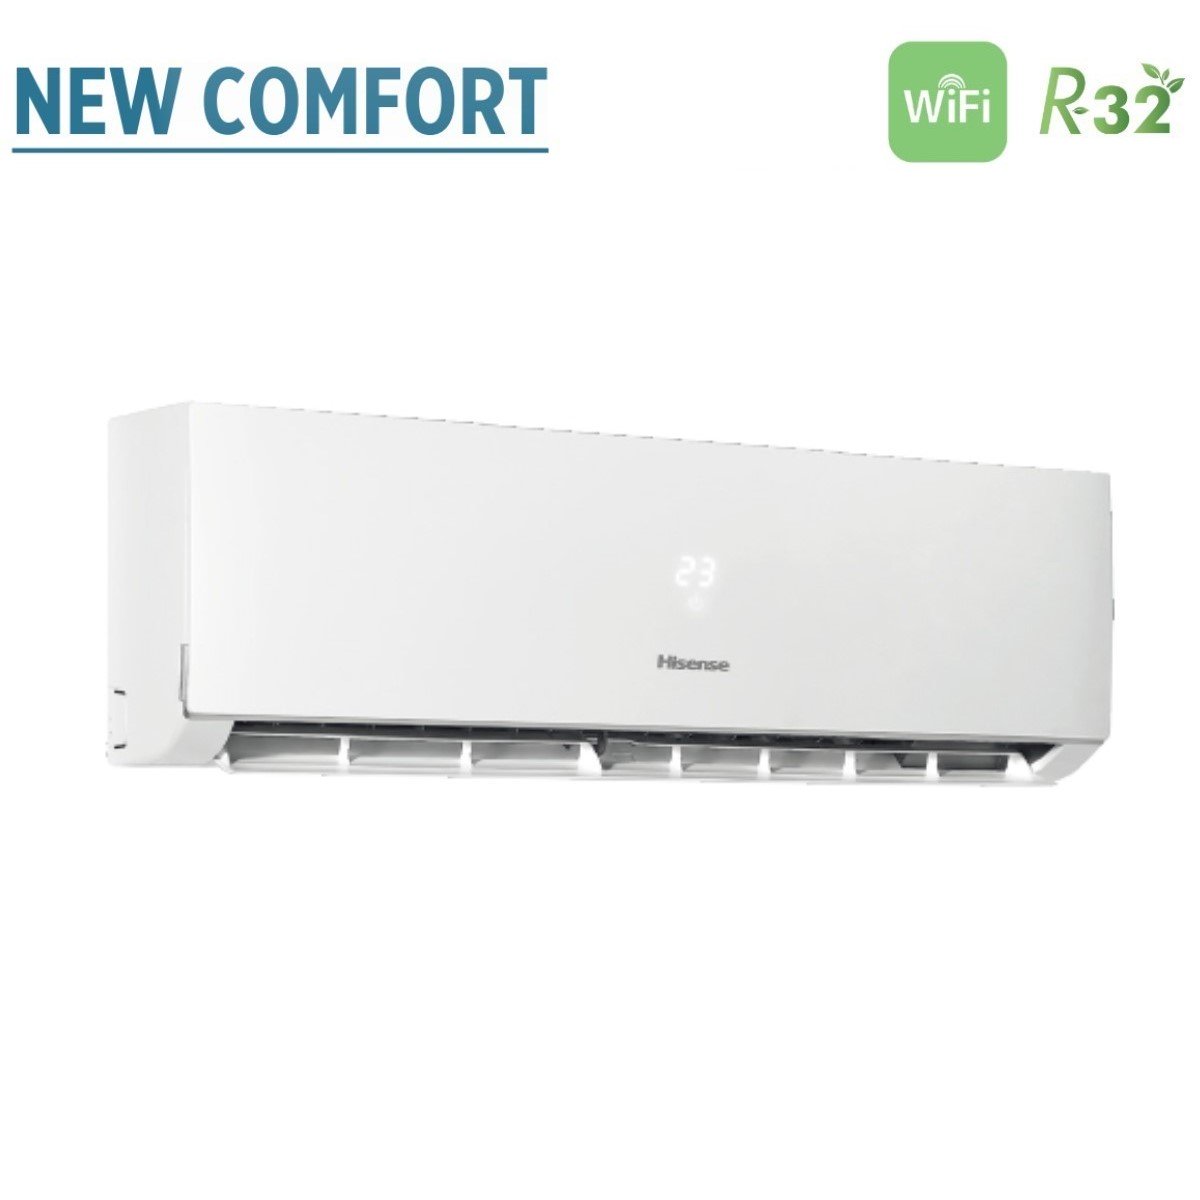 immagine-4-hisense-climatizzatore-condizionatore-hisense-dual-split-inverter-serie-new-comfort-1212-con-2amw50u4rxa-r-32-wi-fi-optional-1200012000-ean-6946087333638